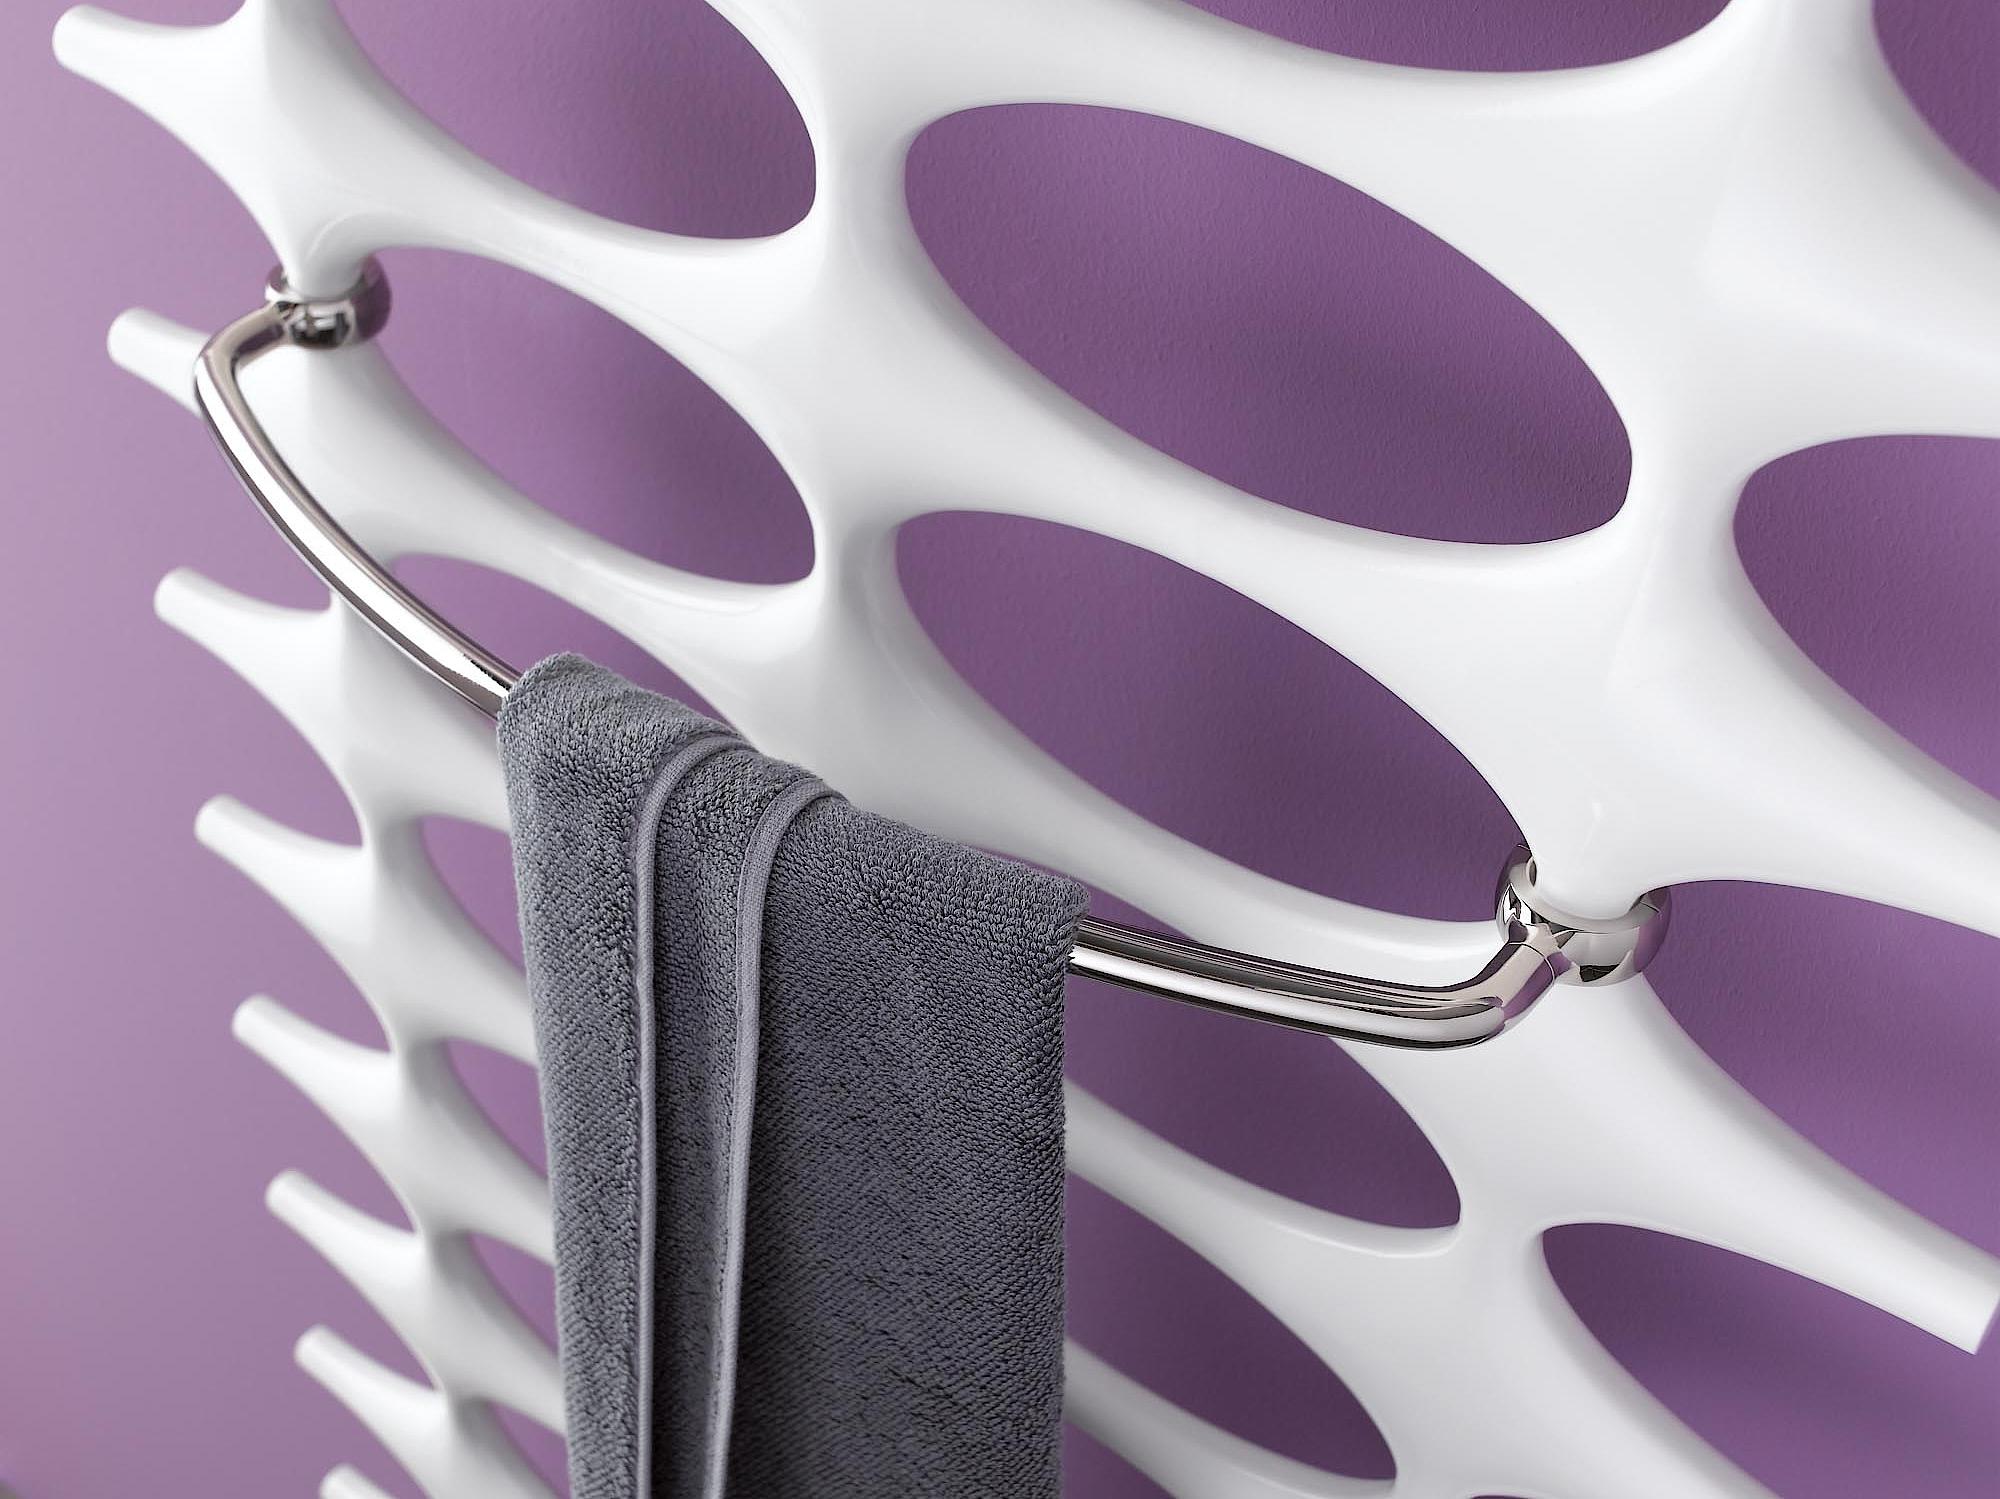 Radiatore da bagno e di design Kermi Ideos staffa per asciugamani.